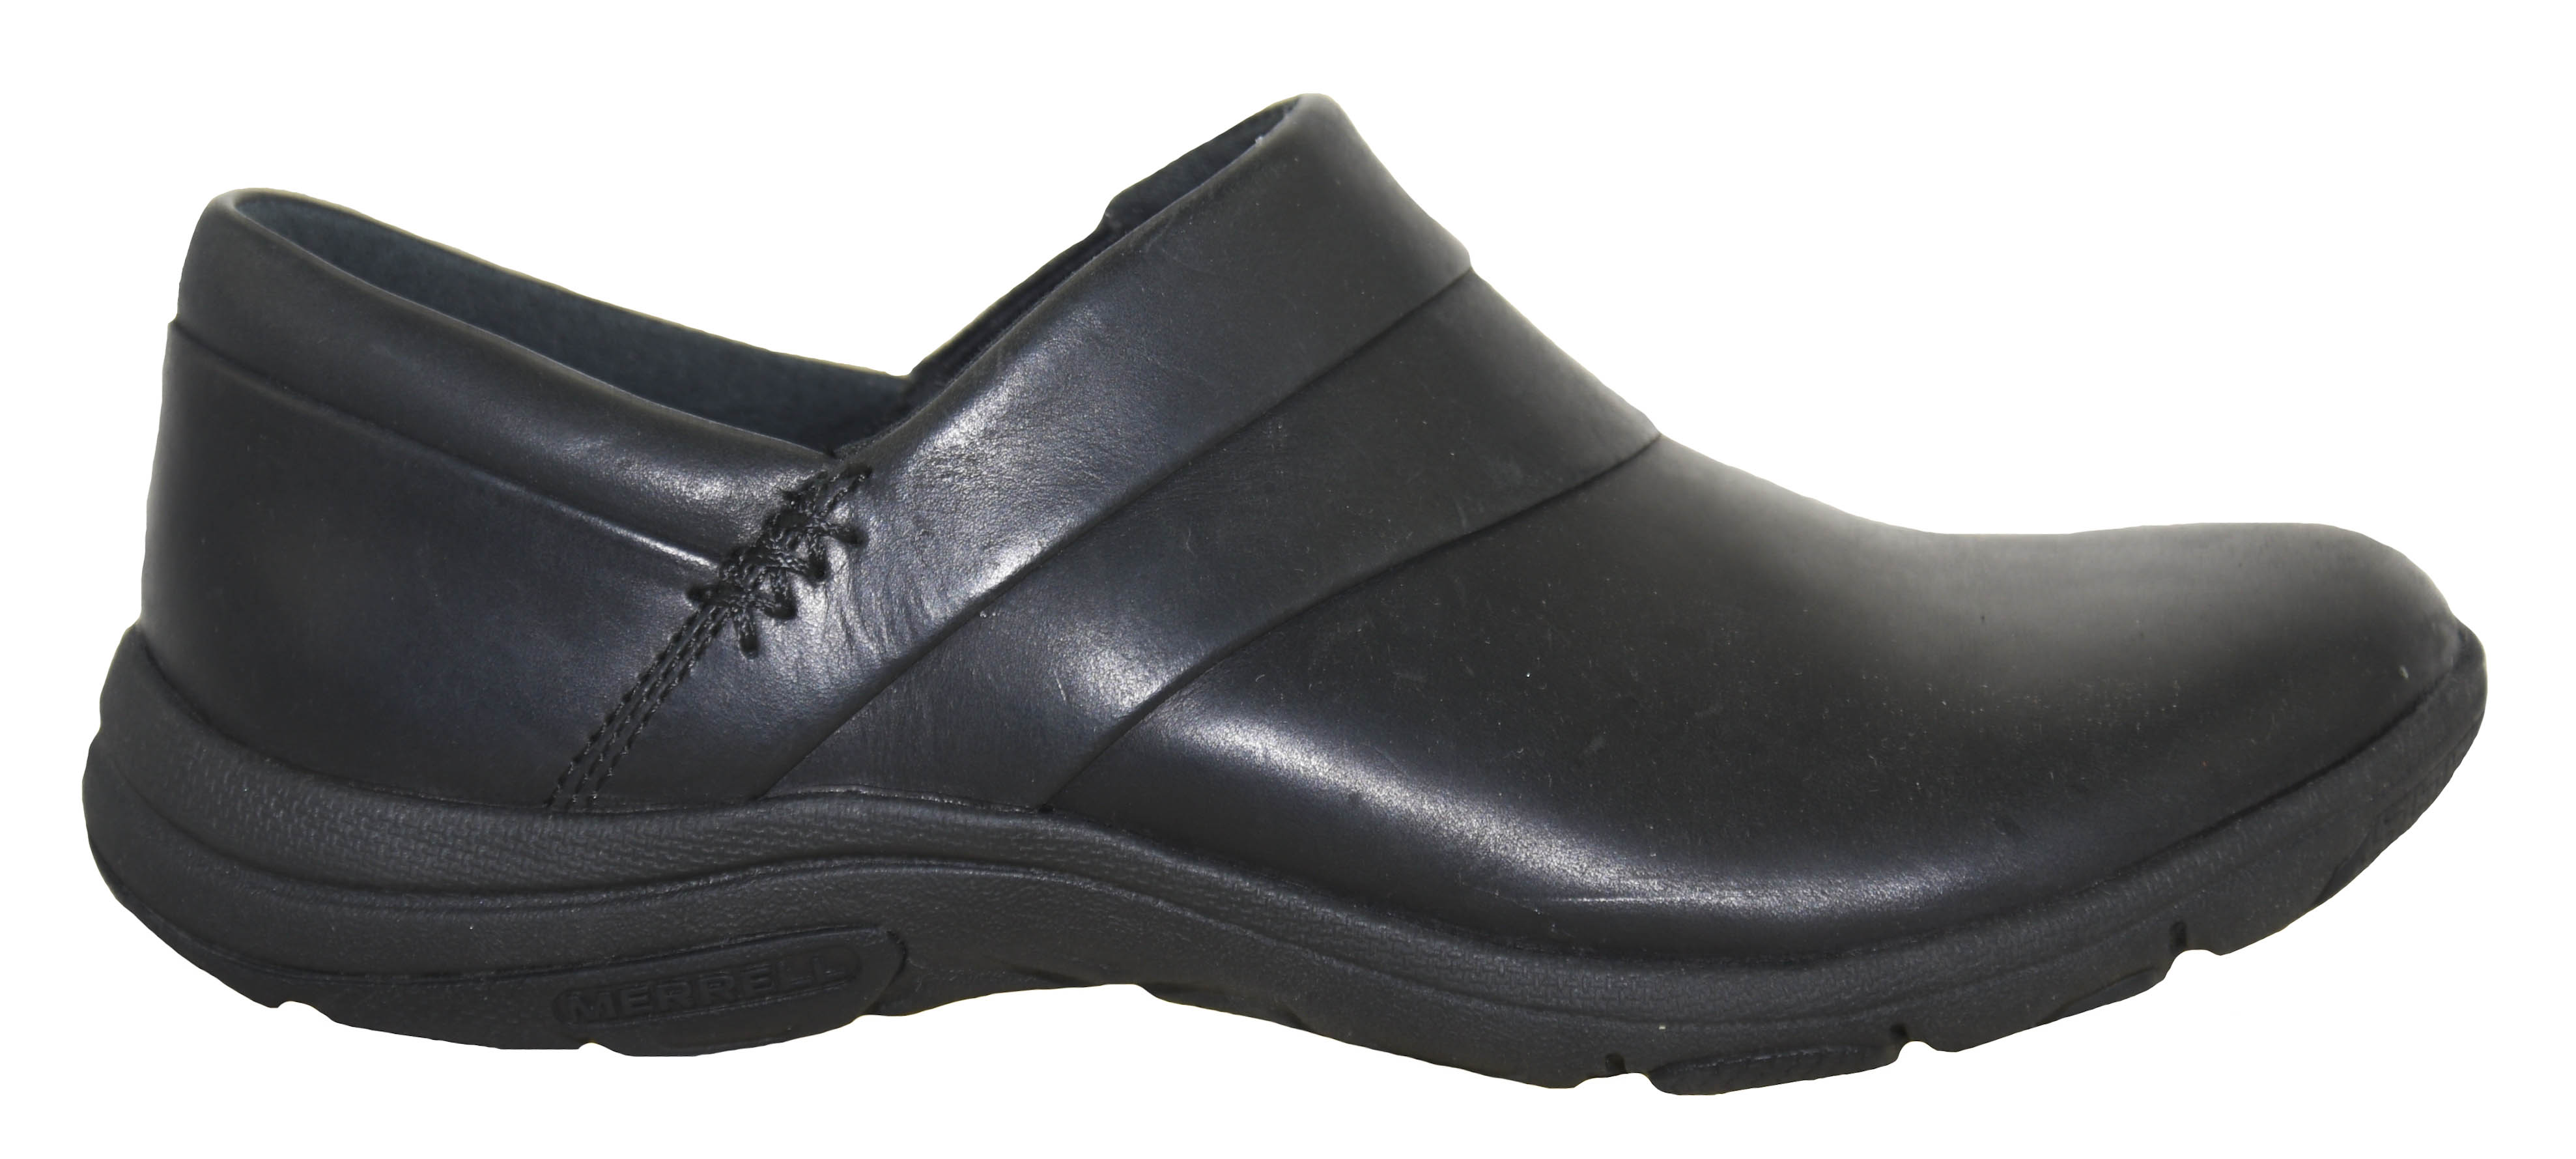 Merrell Women's Dassie Stitch Slip-On Shoe Style J31334 | eBay